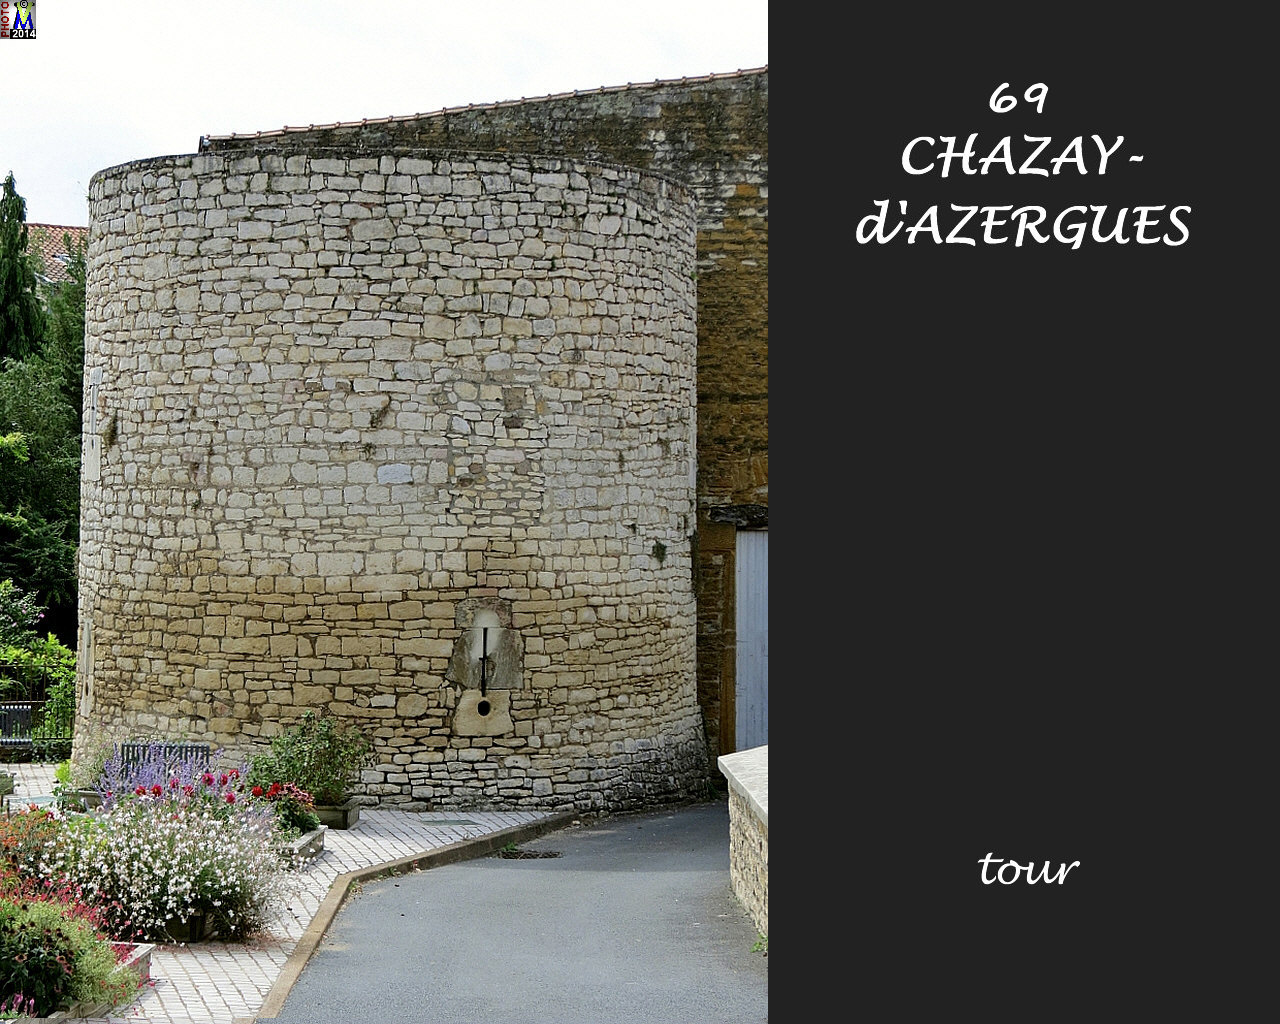 69CHAZAY-AZERGUES_tour_100.jpg